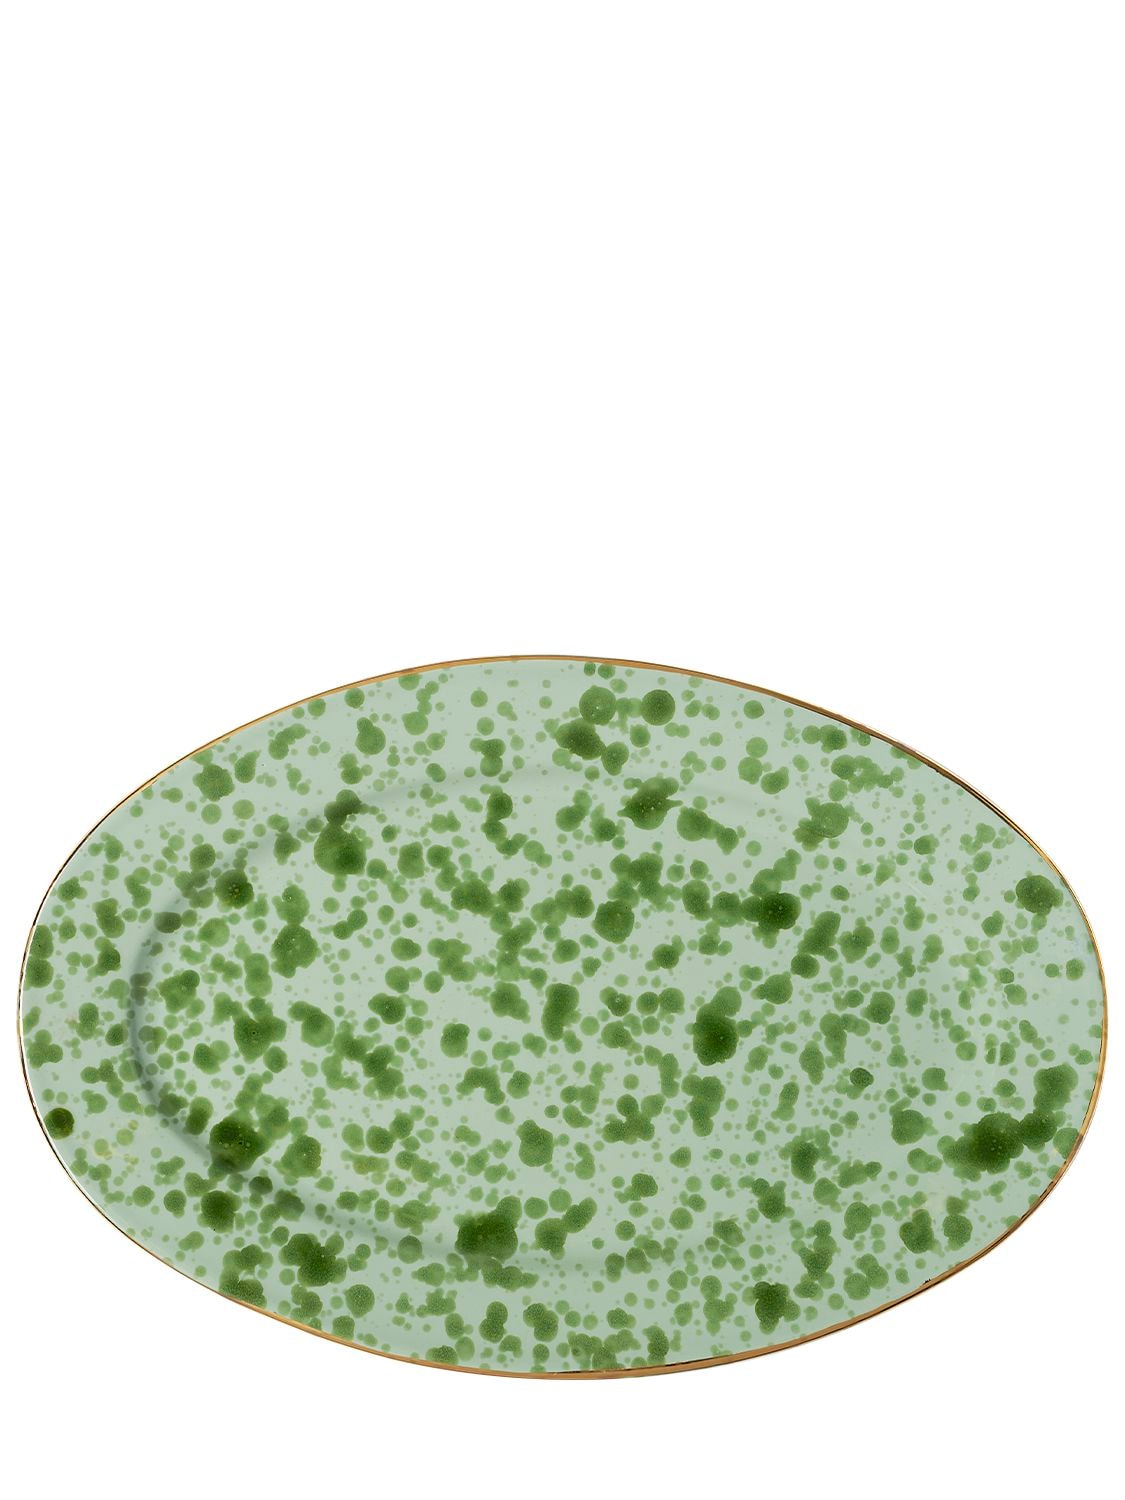 Bitossi Home 17cm Plate In Green